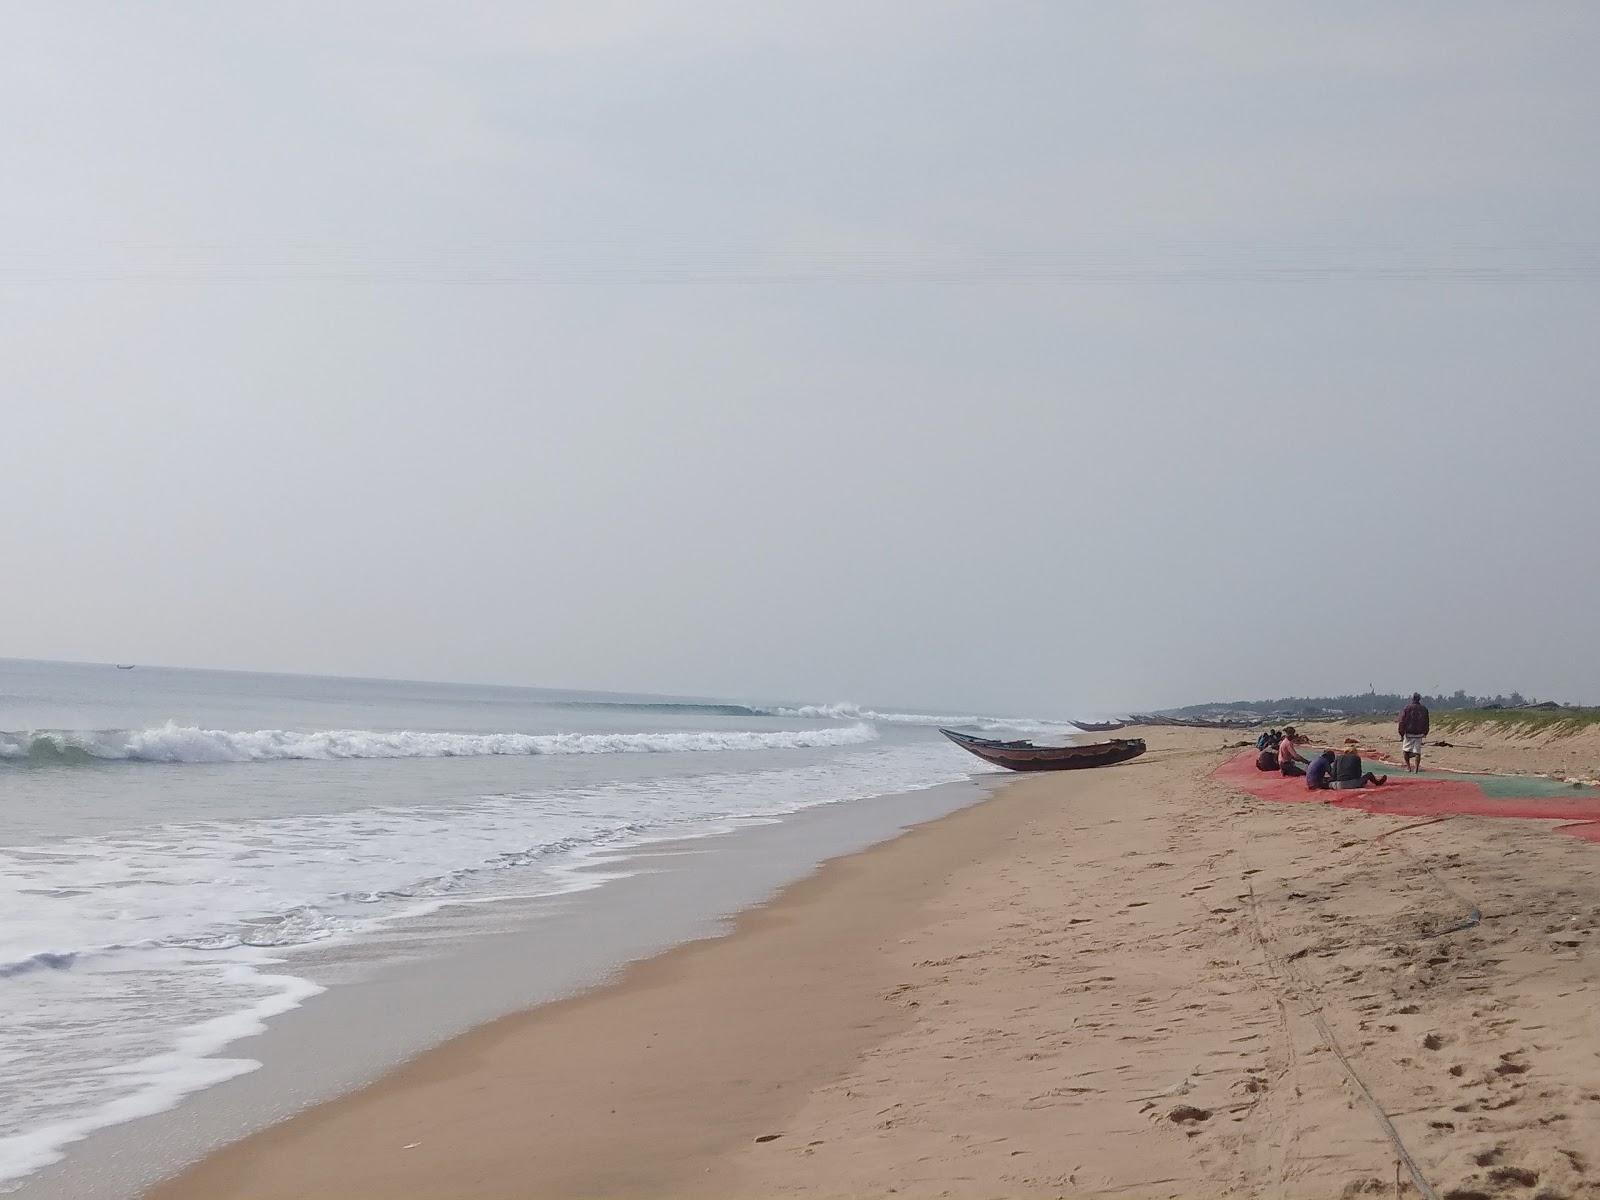 Dhabaleshwar Beach'in fotoğrafı vahşi alan